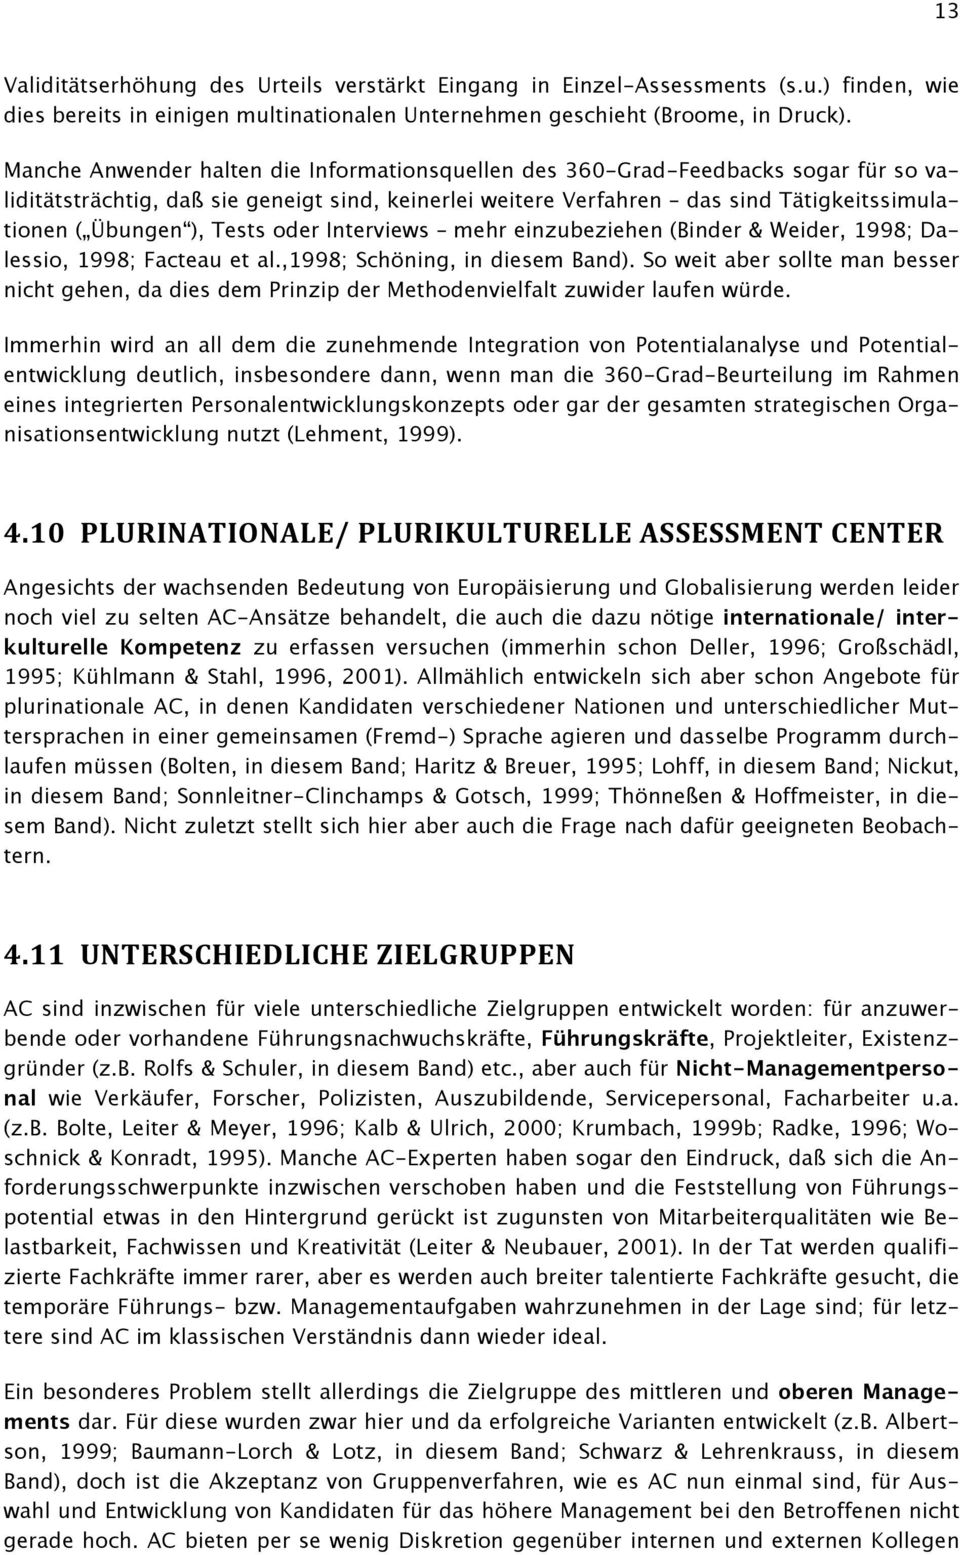 Tests oder Interviews mehr einzubeziehen (Binder & Weider, 1998; Dalessio, 1998; Facteau et al.,1998; Schöning, in diesem Band).